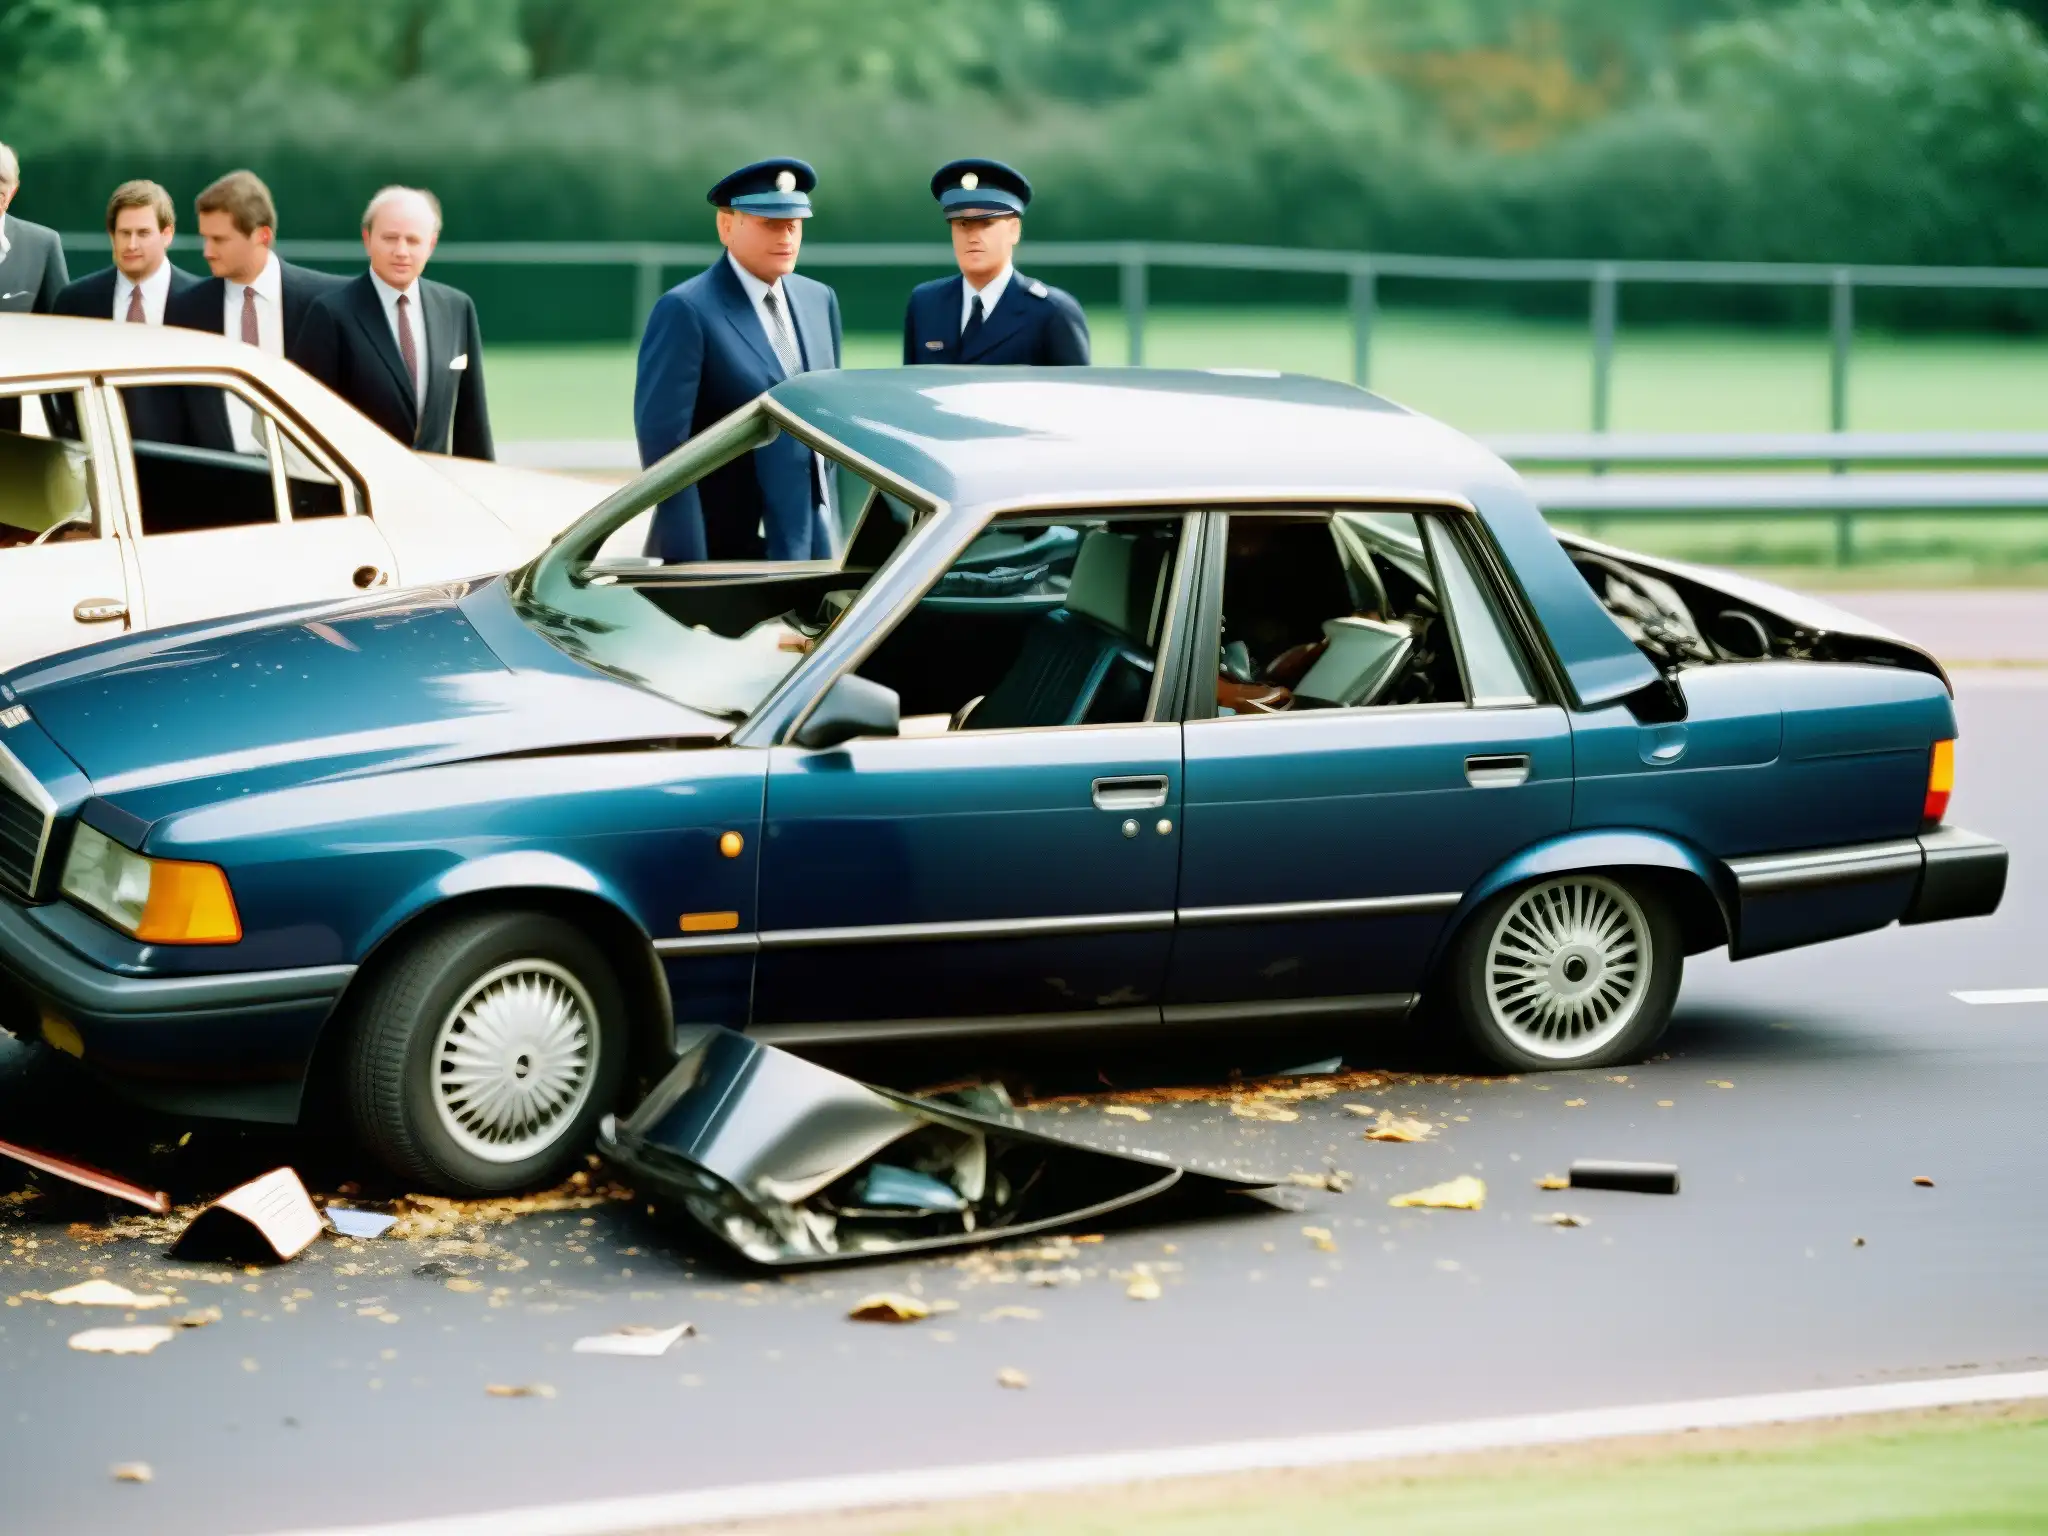 Escena impactante del accidente fatal de Lady Di: destrozos del coche y el impacto de la tragedia